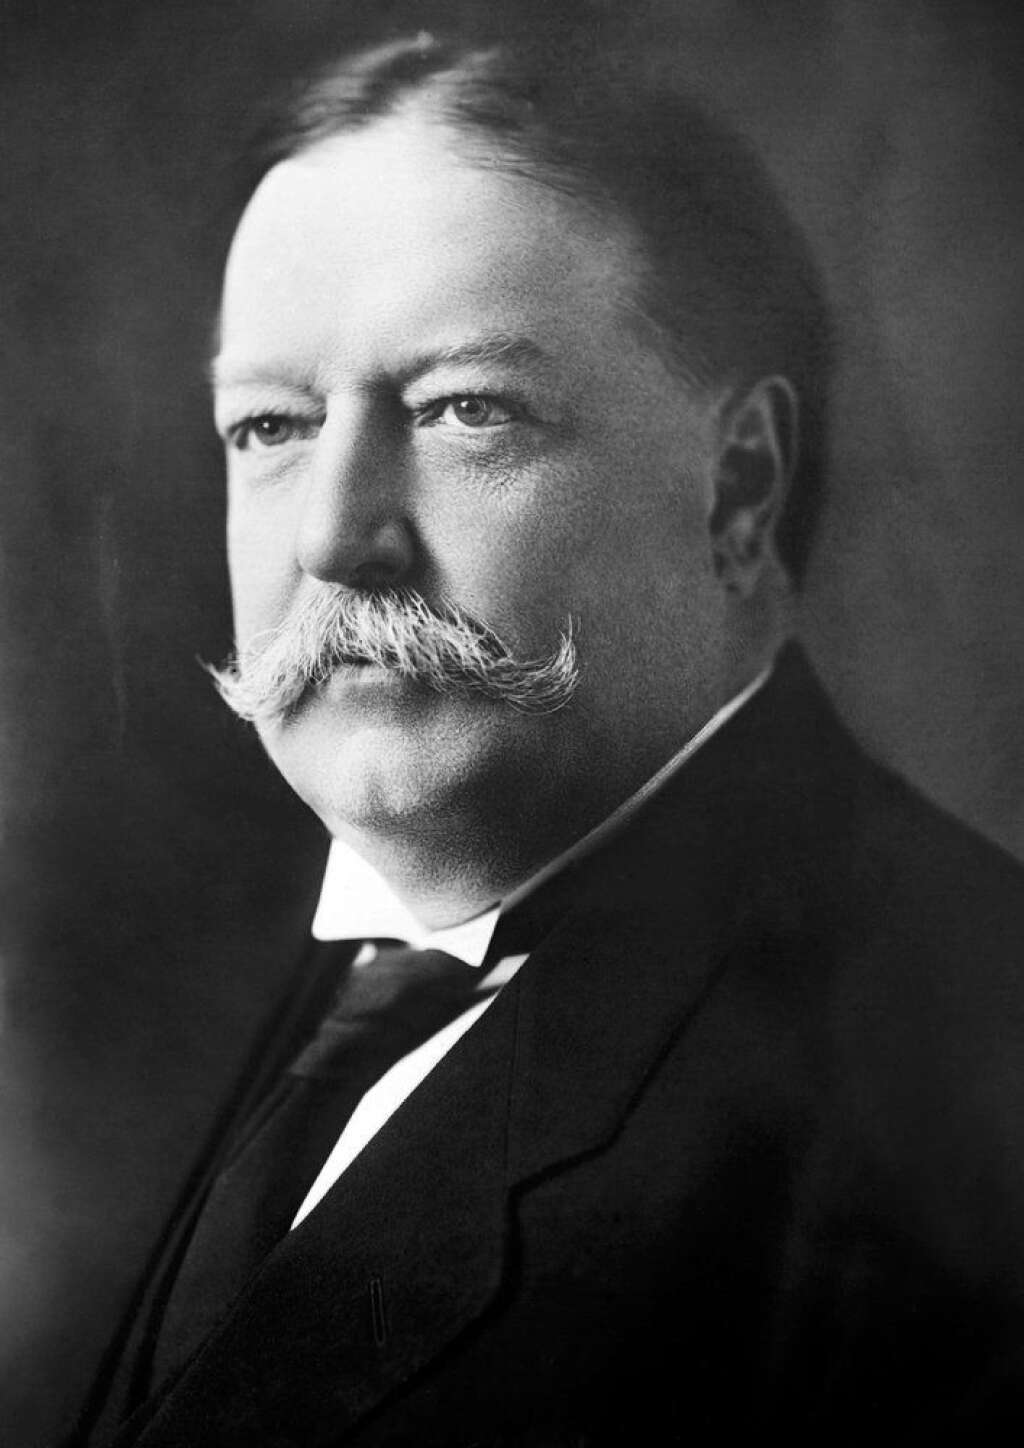 William H. Taft 1909-1913 -